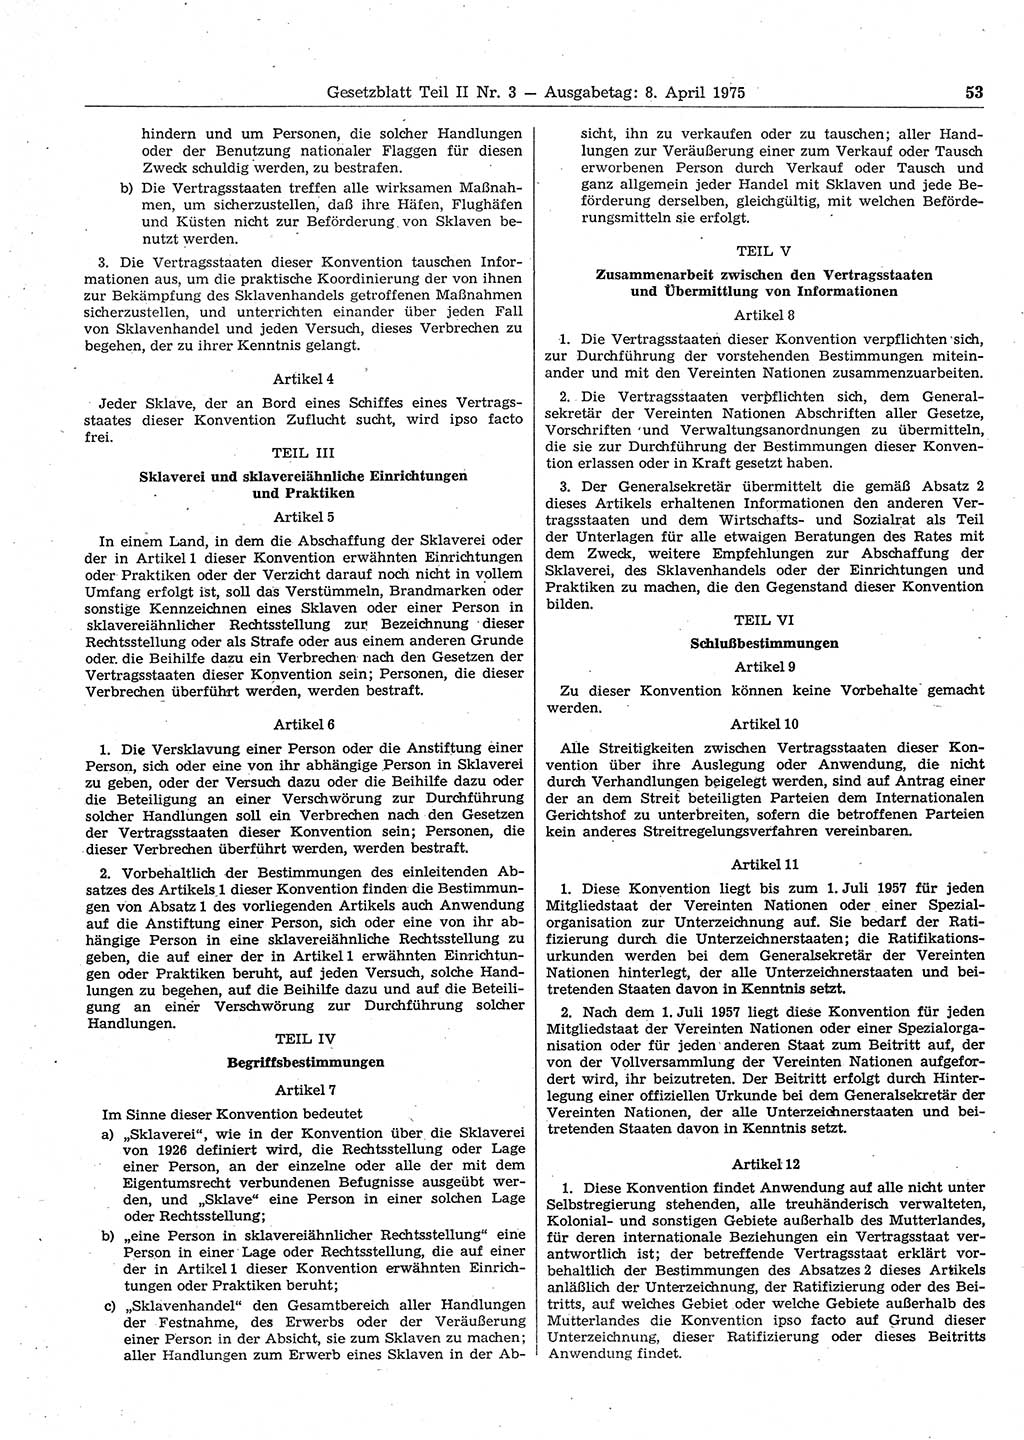 Gesetzblatt (GBl.) der Deutschen Demokratischen Republik (DDR) Teil ⅠⅠ 1975, Seite 53 (GBl. DDR ⅠⅠ 1975, S. 53)